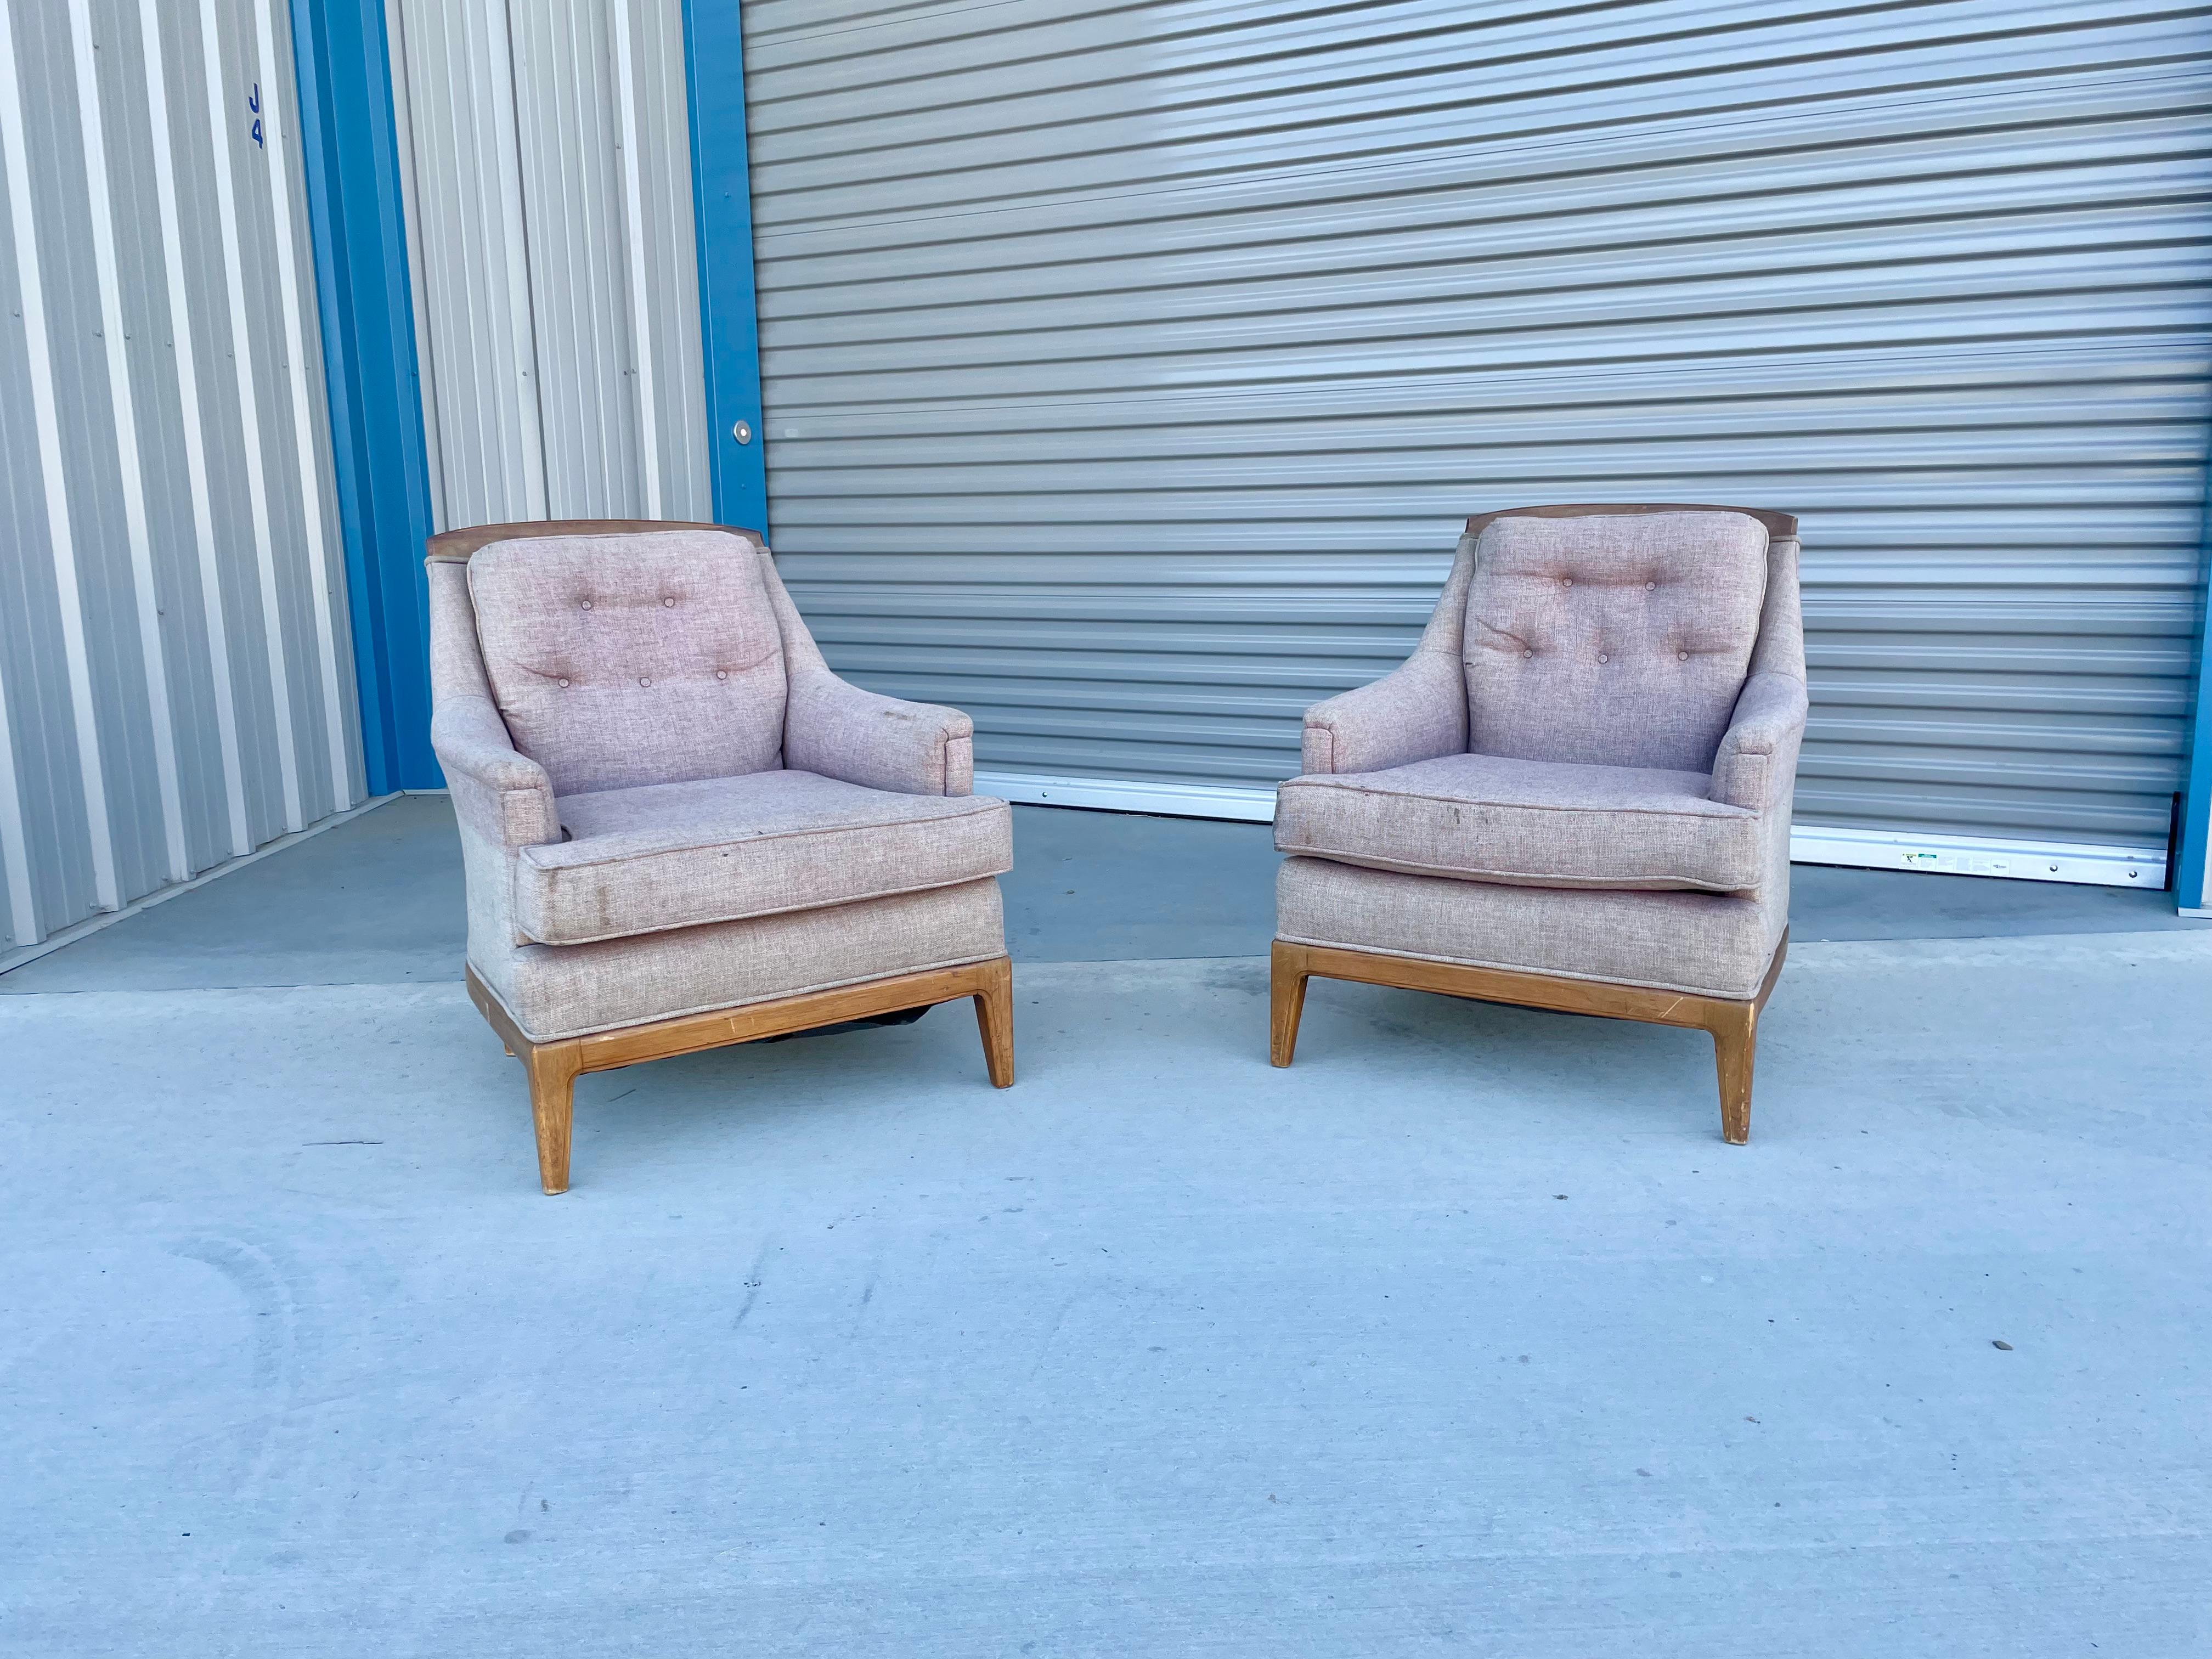 Die Lounge-Sessel aus Nussbaumholz wurden in den 1960er Jahren in den Vereinigten Staaten entworfen und hergestellt. Dieses Paar Stühle hat seine ursprüngliche Polsterung, die neu gepolstert werden muss, aber die perfekte Gelegenheit, um Ihr ideales